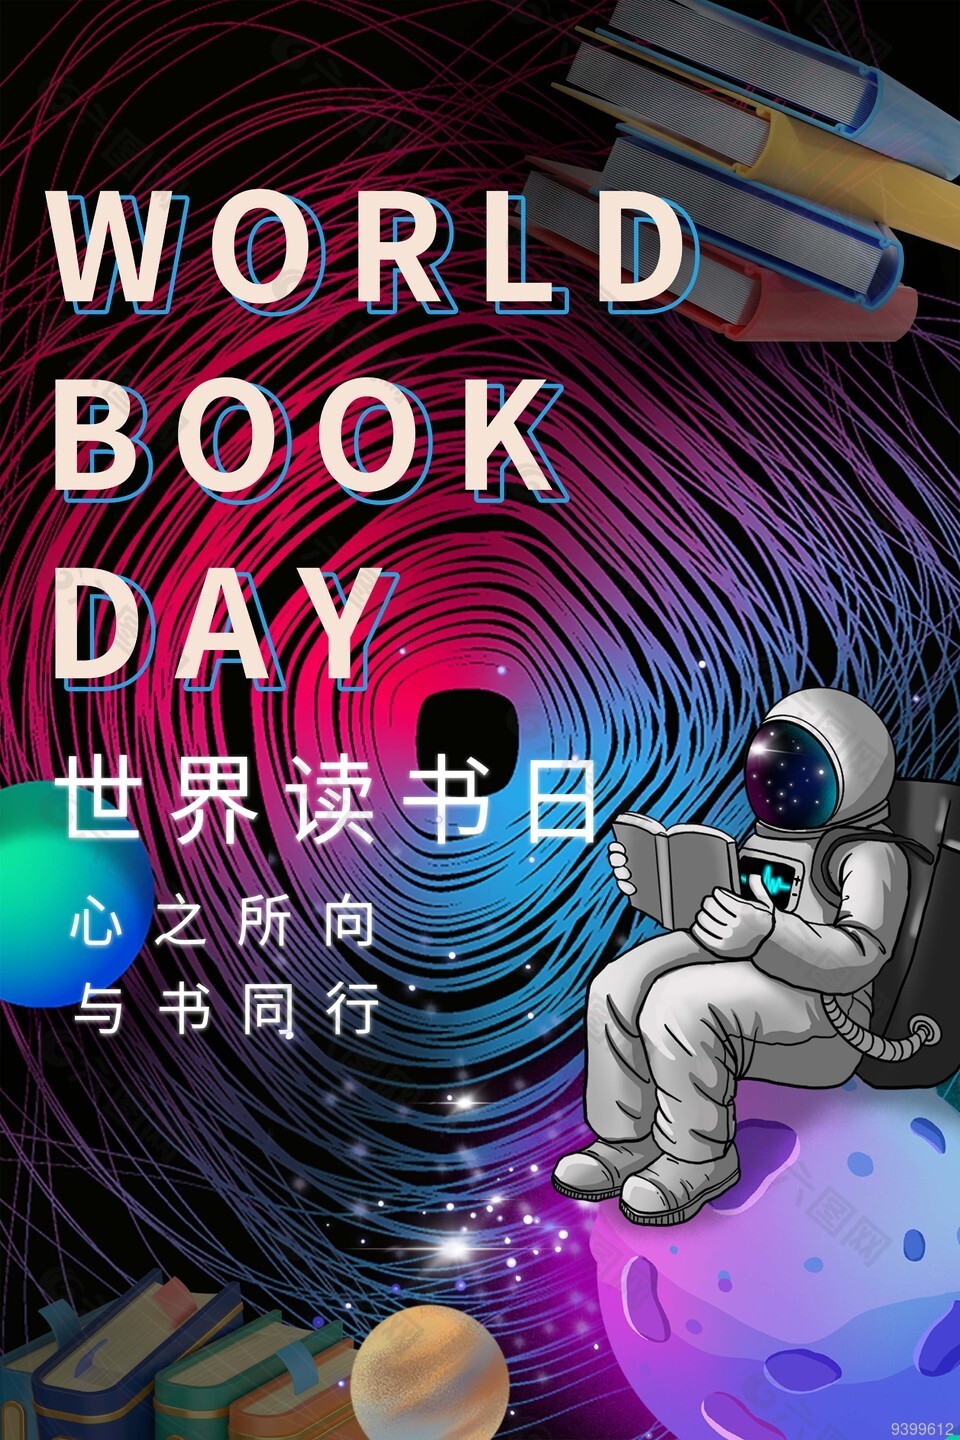 创意宇航员主题世界读书日宣传海报下载